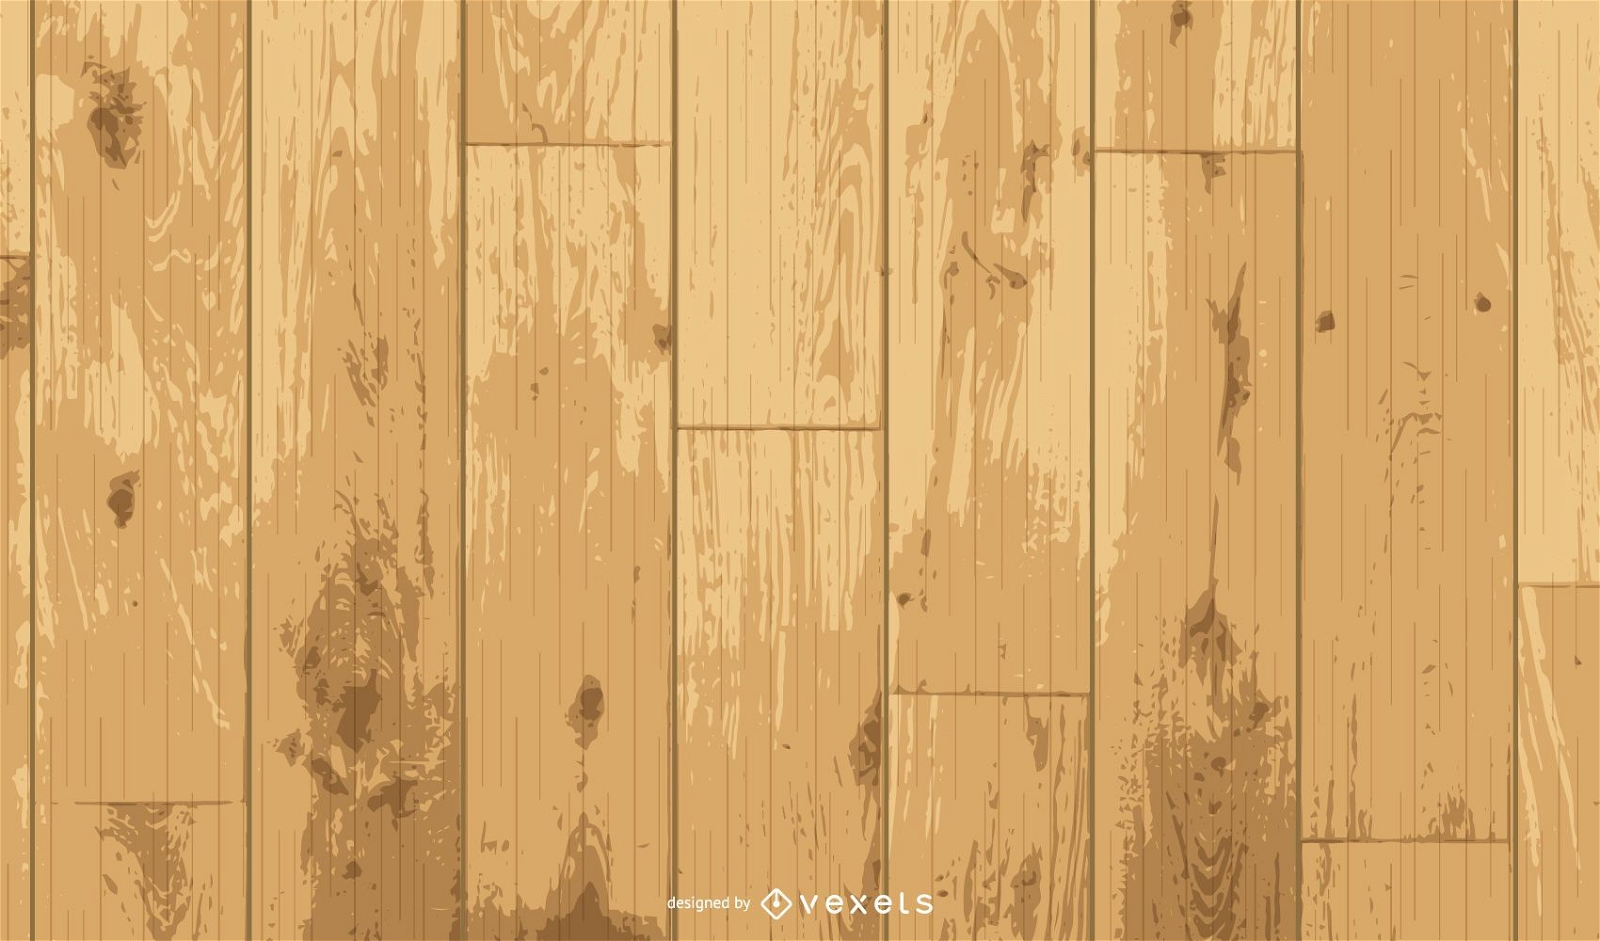 Wooden Floor Texture 02 Vector